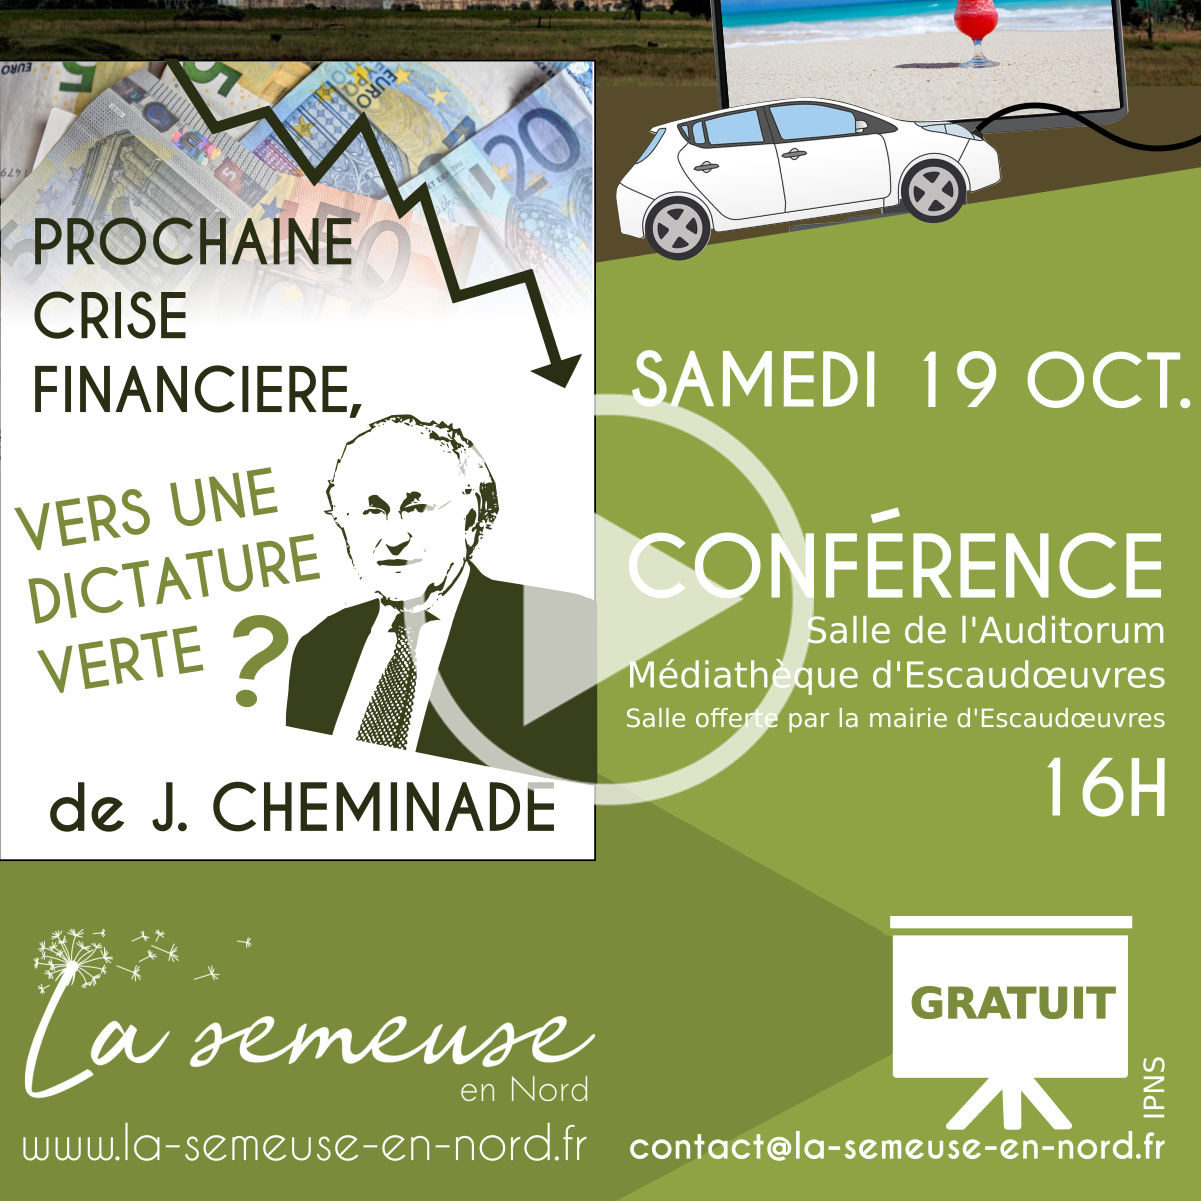 Conférence de Jacques Cheminade :<br>Prochaine crise financière, vers une dictature verte ?